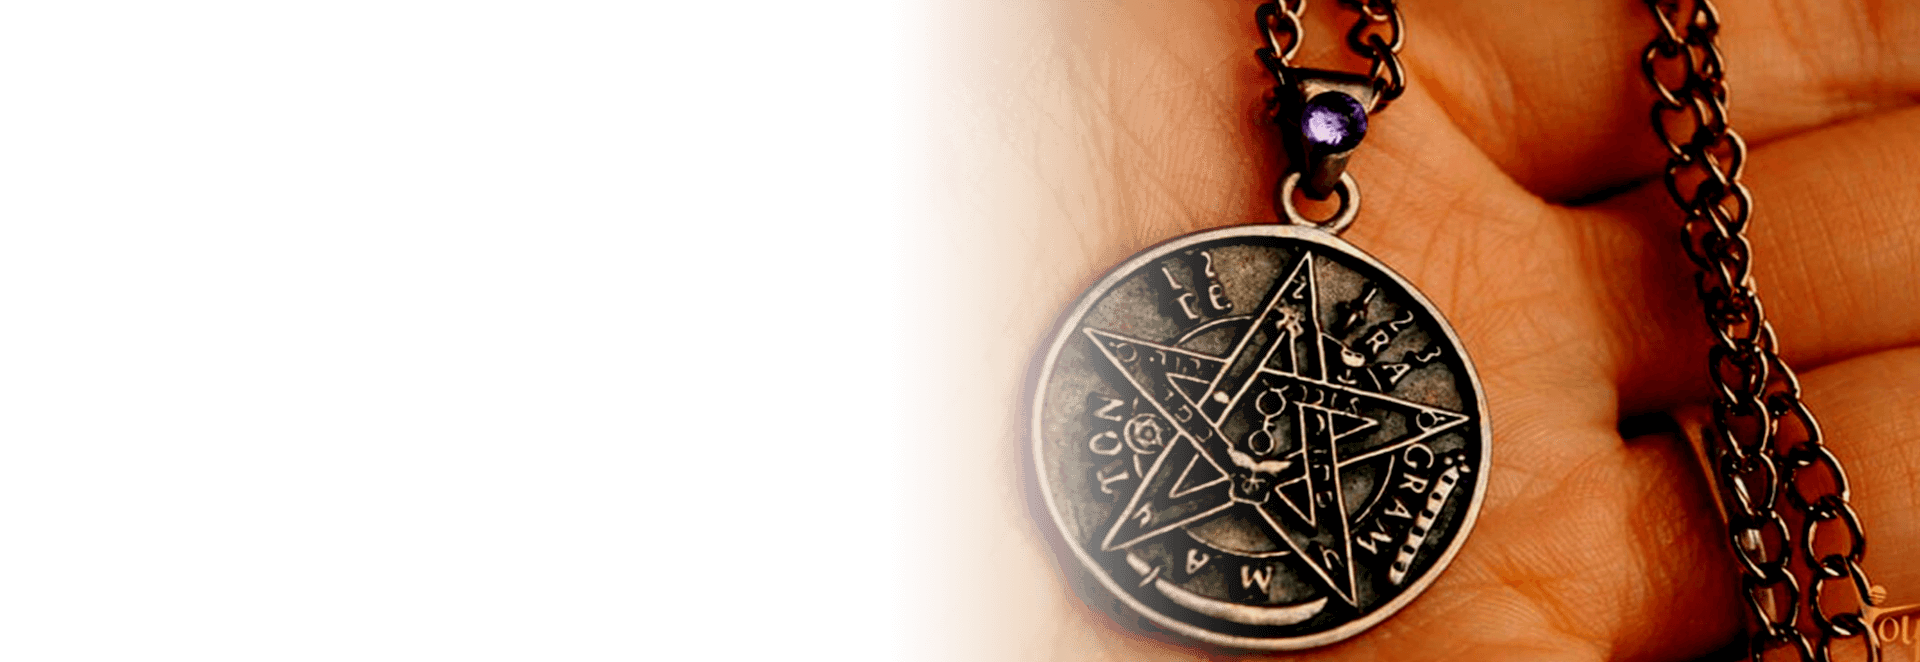 Una persona sostiene un collar con un colgante de pentagrama.